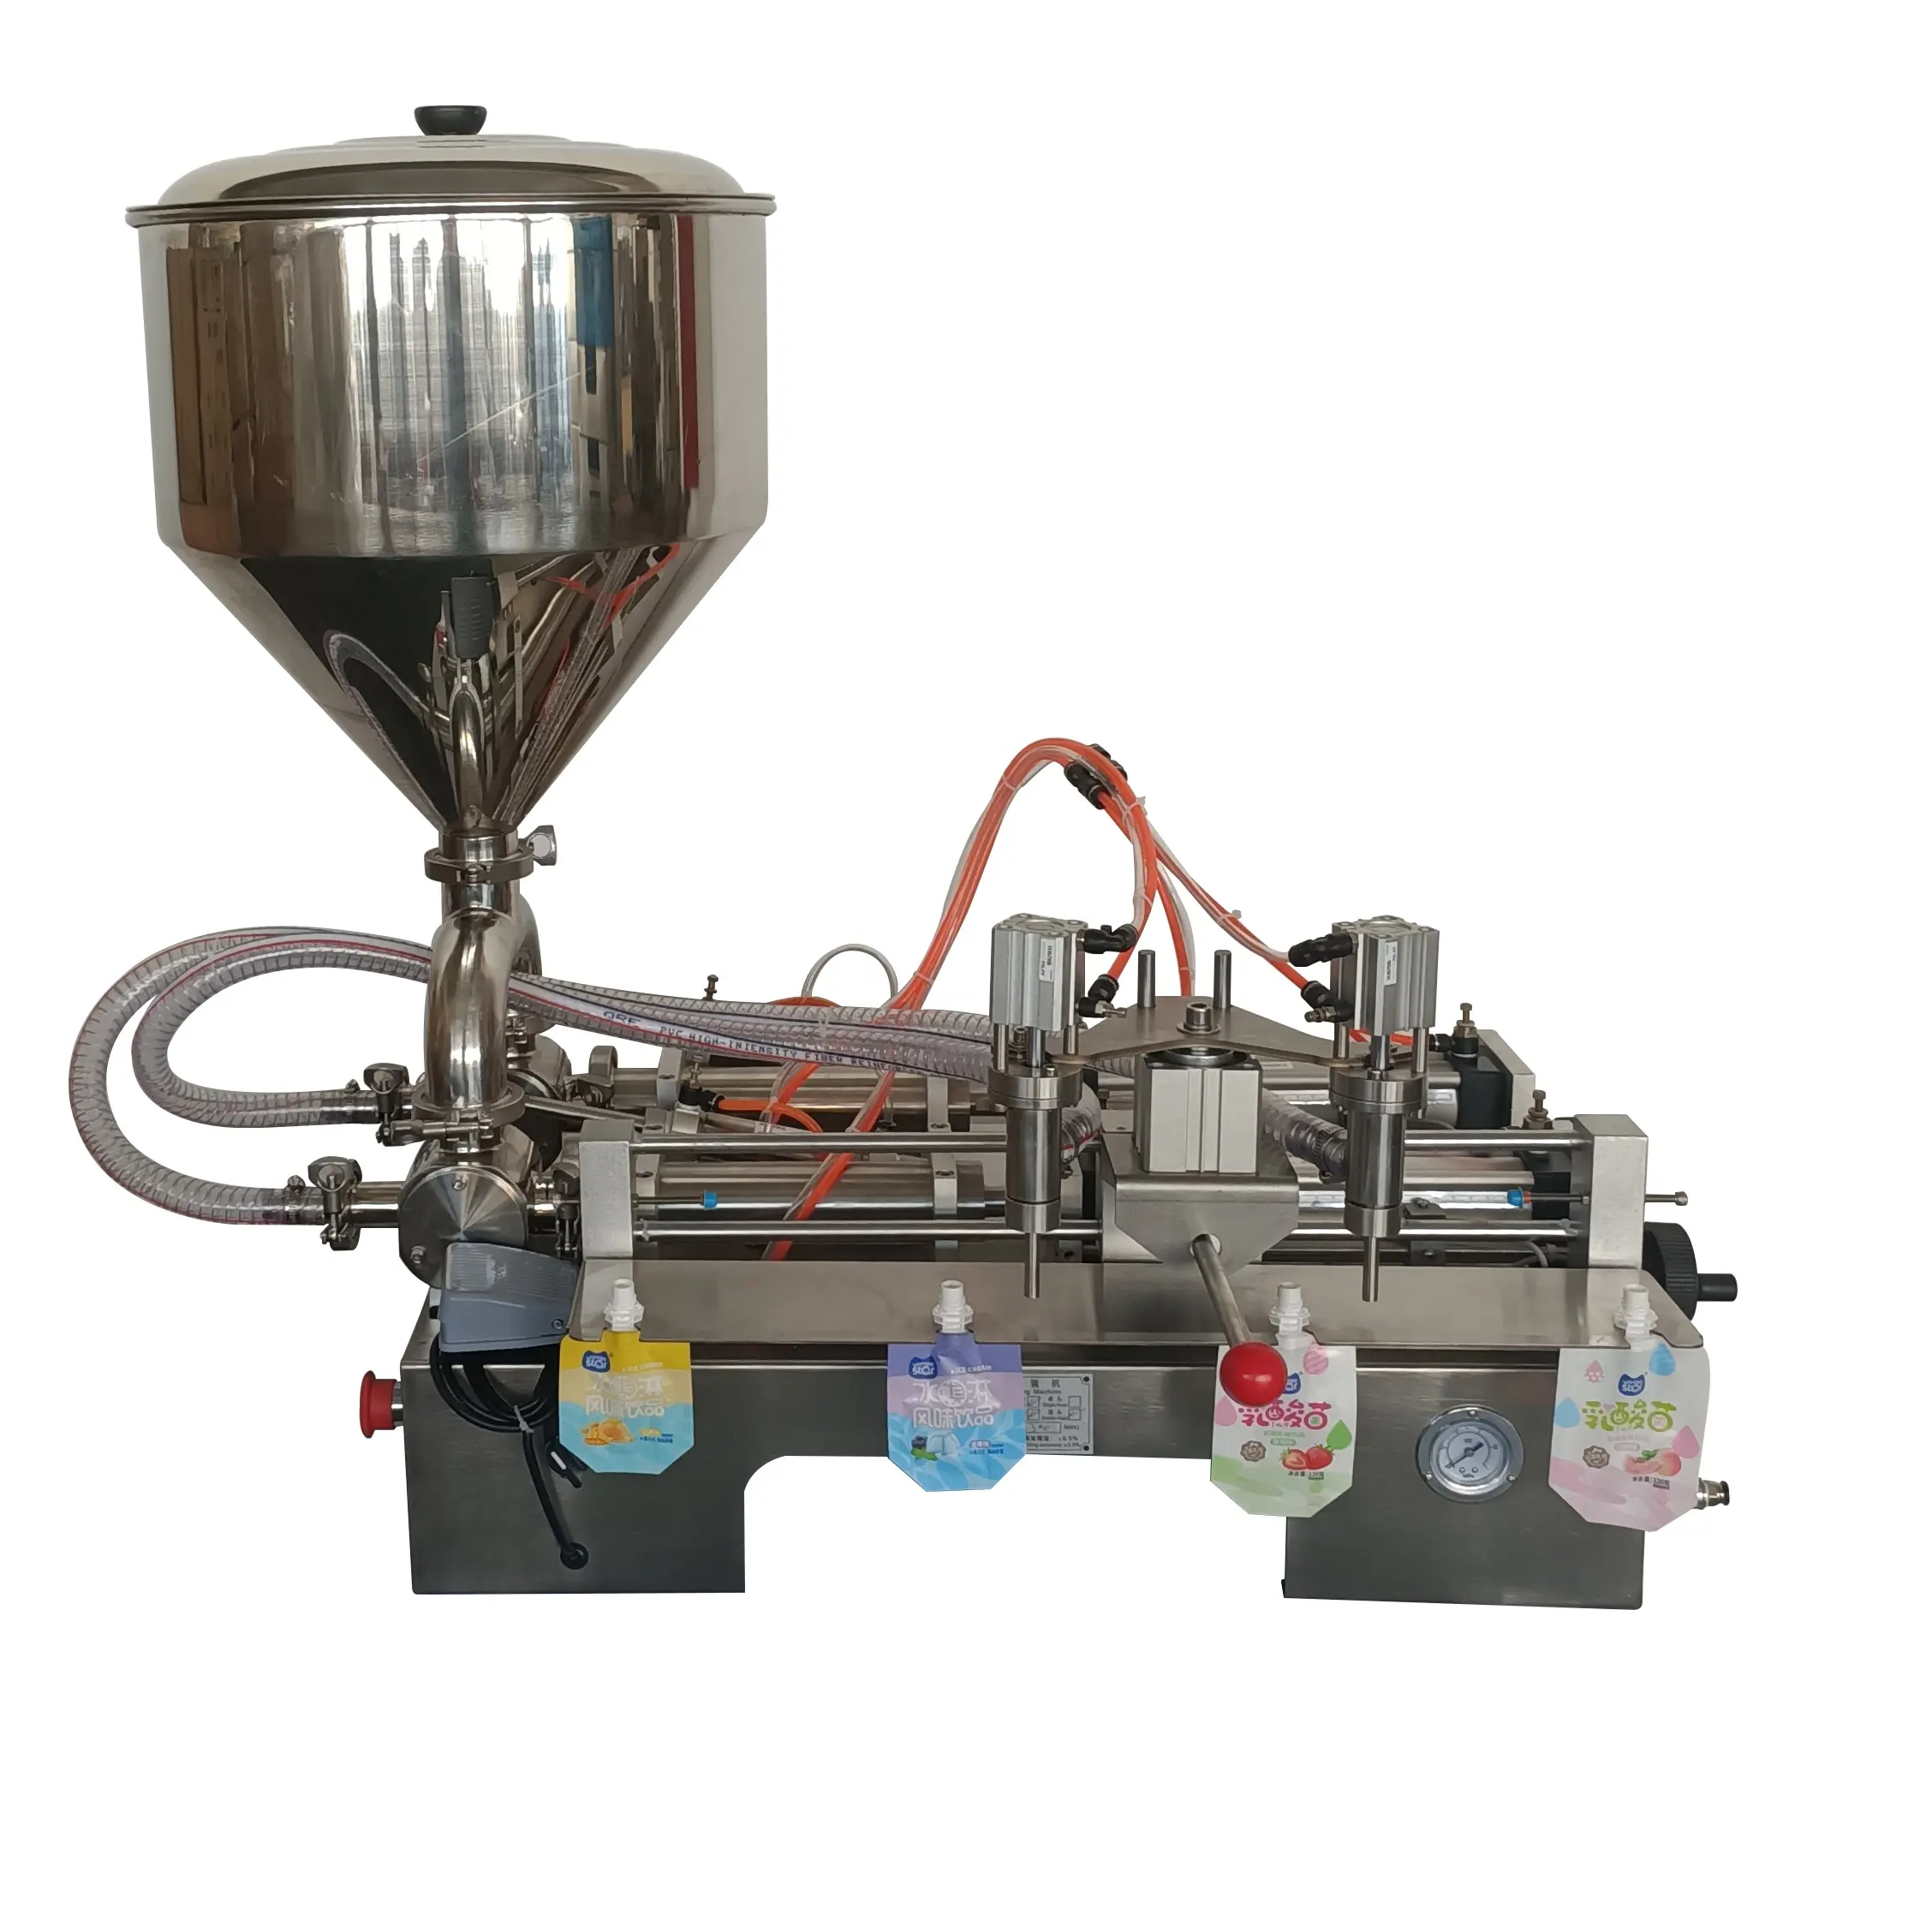 ماكينة شبه آلية أفقية لتعبئة السوائل والكريم والمربى والزجاجات 0.4-0.6 ميغاباسكال، ماكينة إعداد الزجاجات الزجاجية، ماكينة تعبئة البيرة